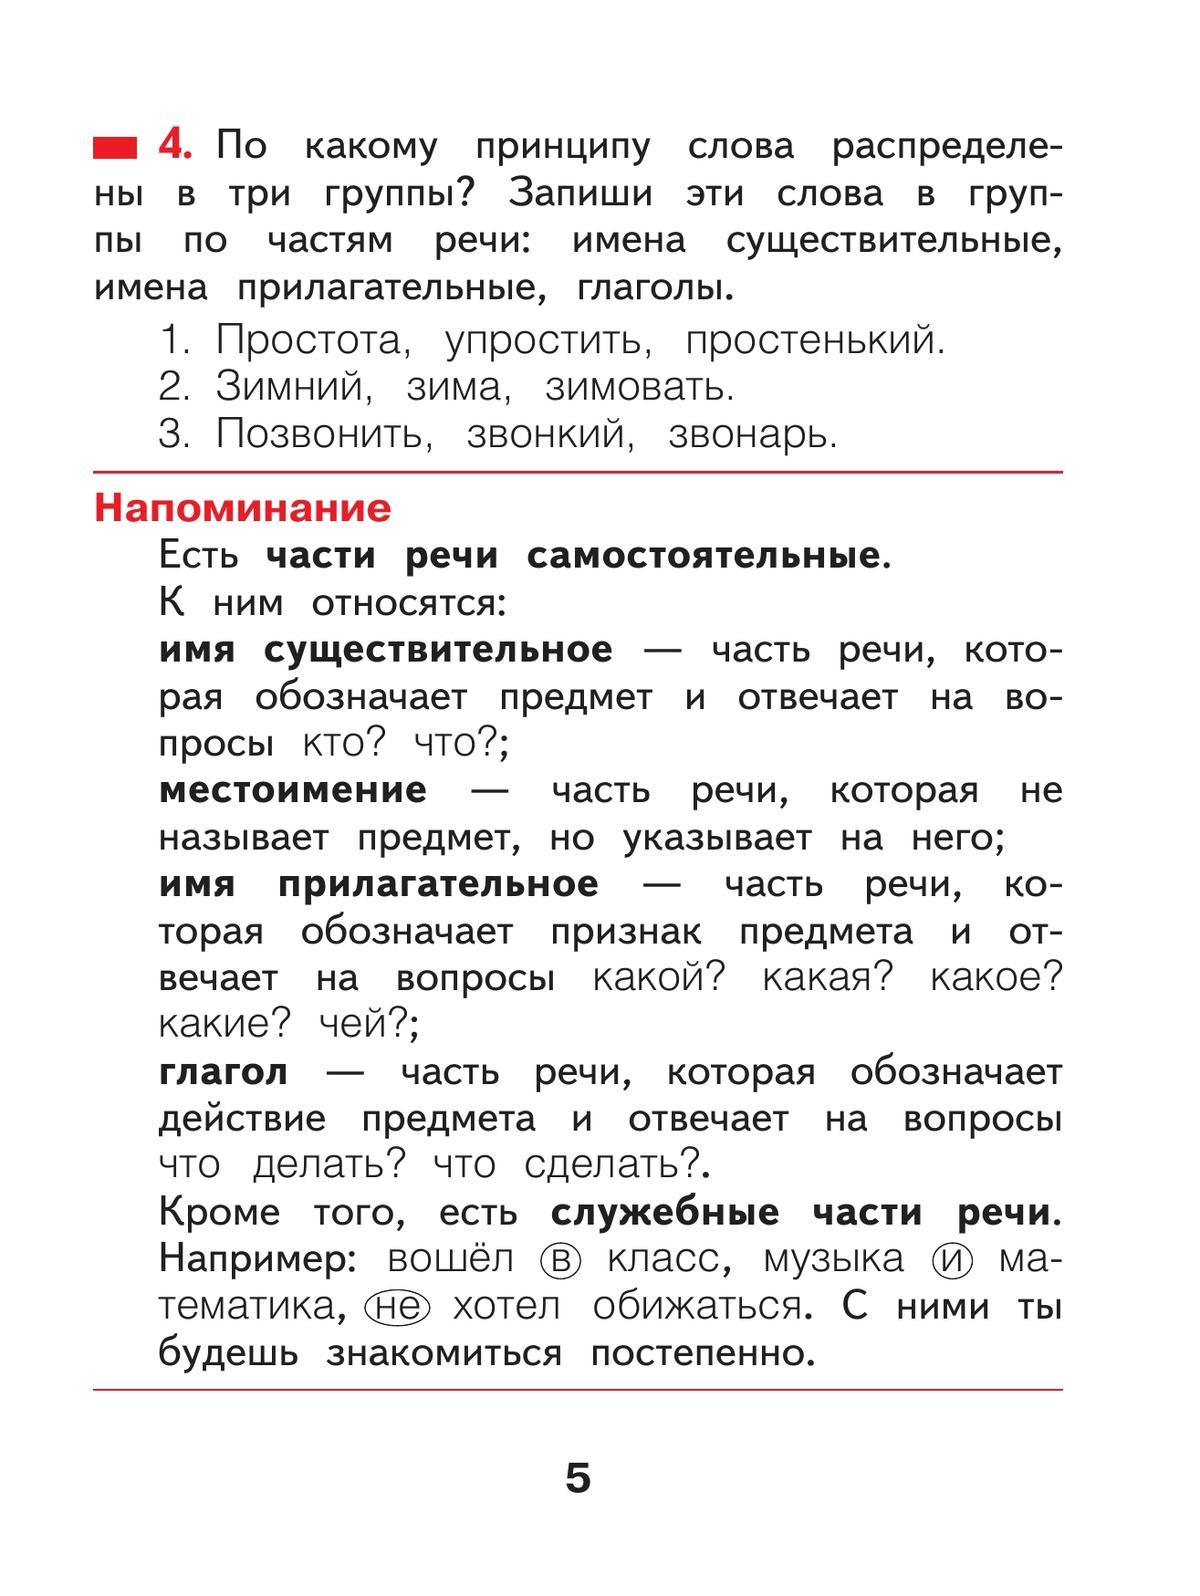 Русский язык. 2 класс. Учебное пособие В 2 ч. Часть 2 2